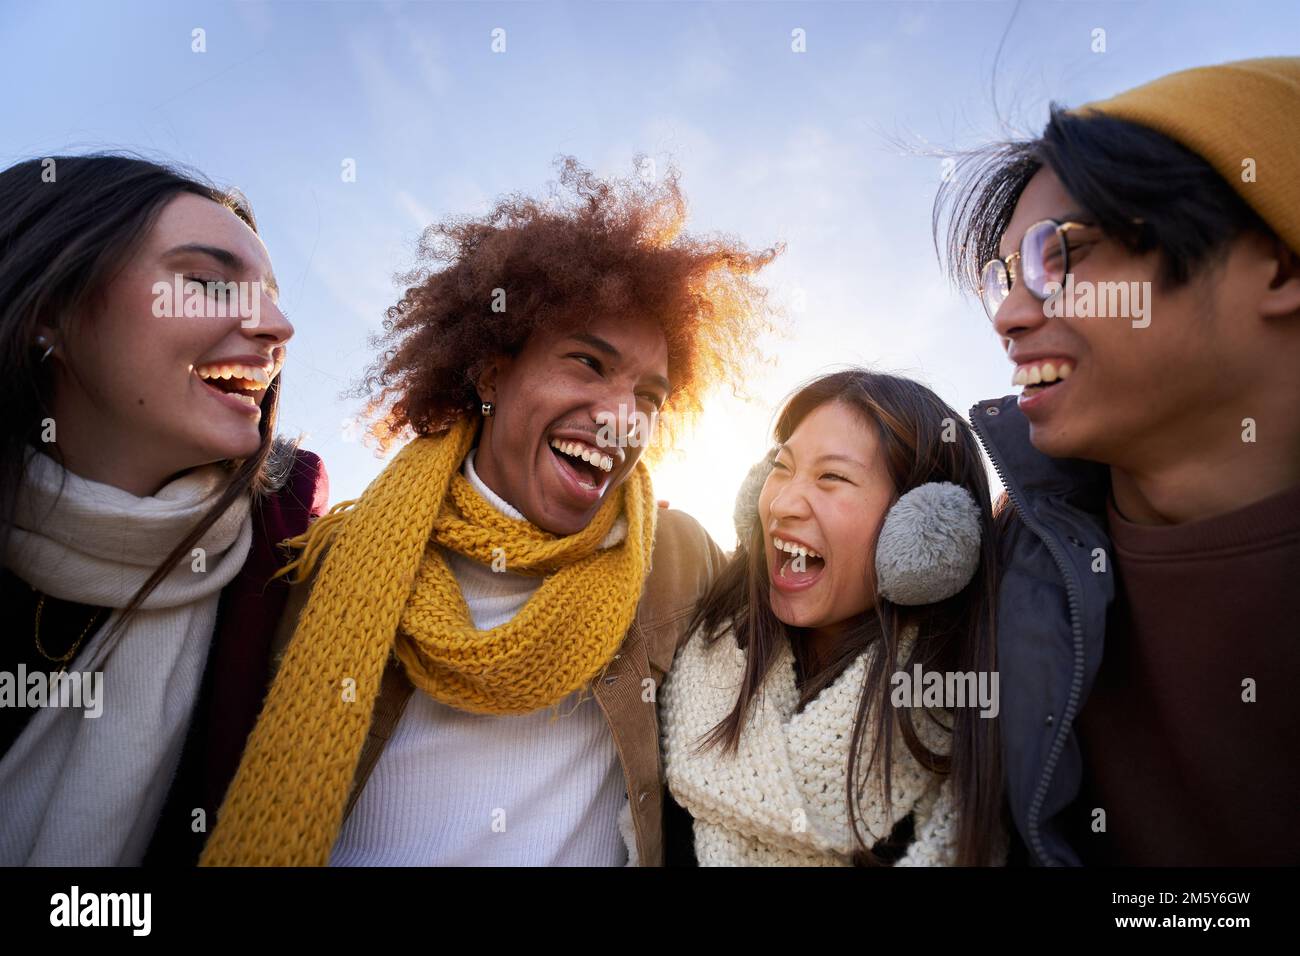 Multiethnische Gruppe von Freunden, die sich umarmen und Spaß haben isolierte junge, lächelnde Menschen, die zusammen lachen Stockfoto